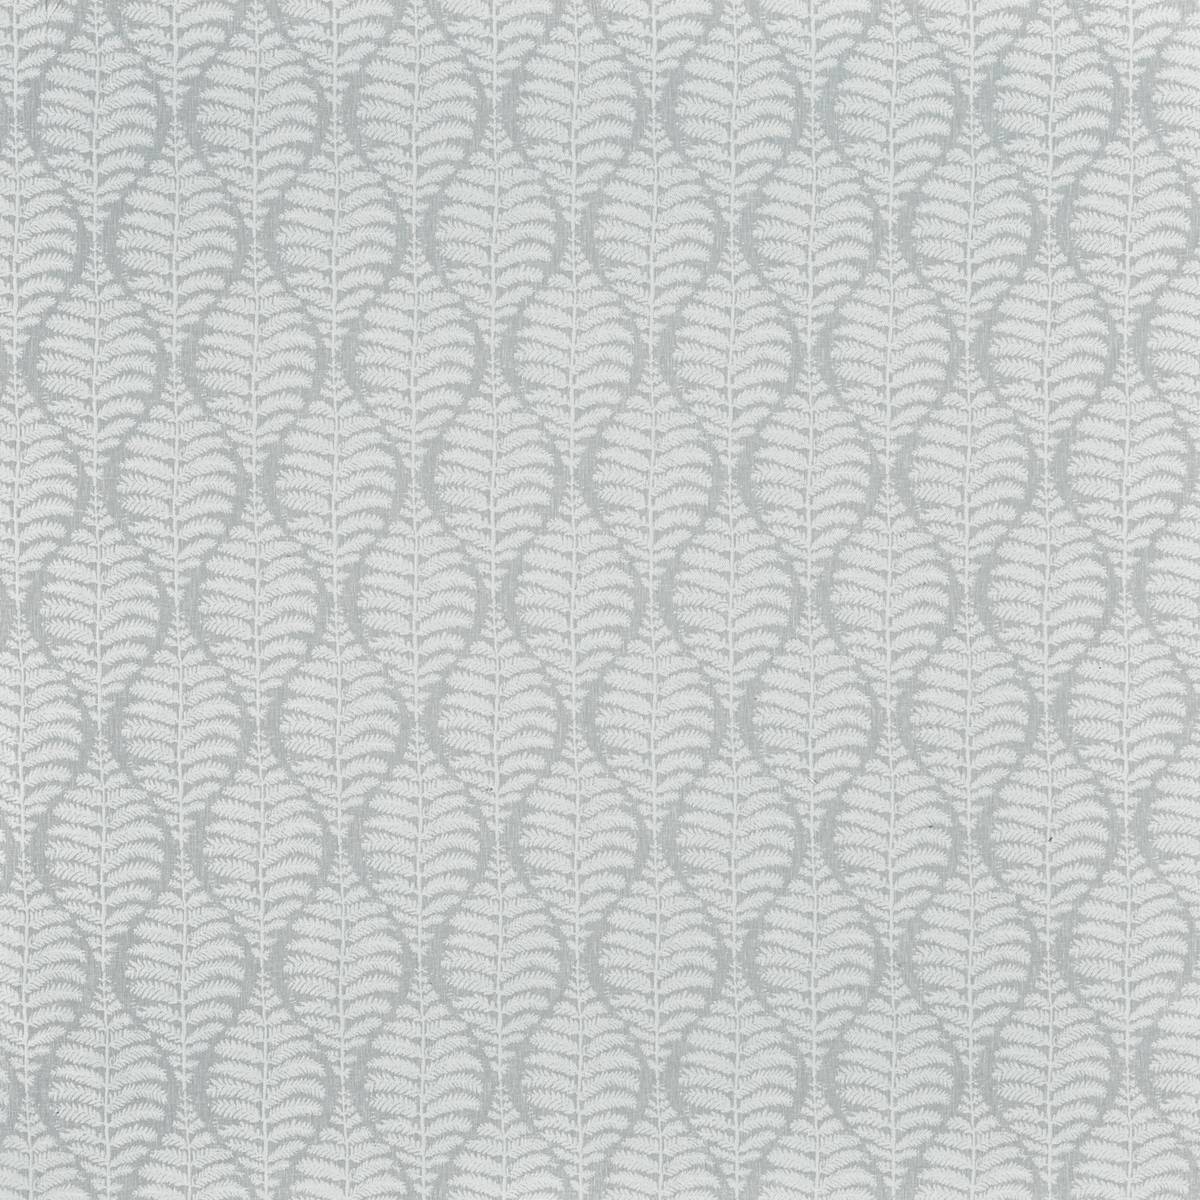 Lottie Silver Fabric by Prestigious Textiles